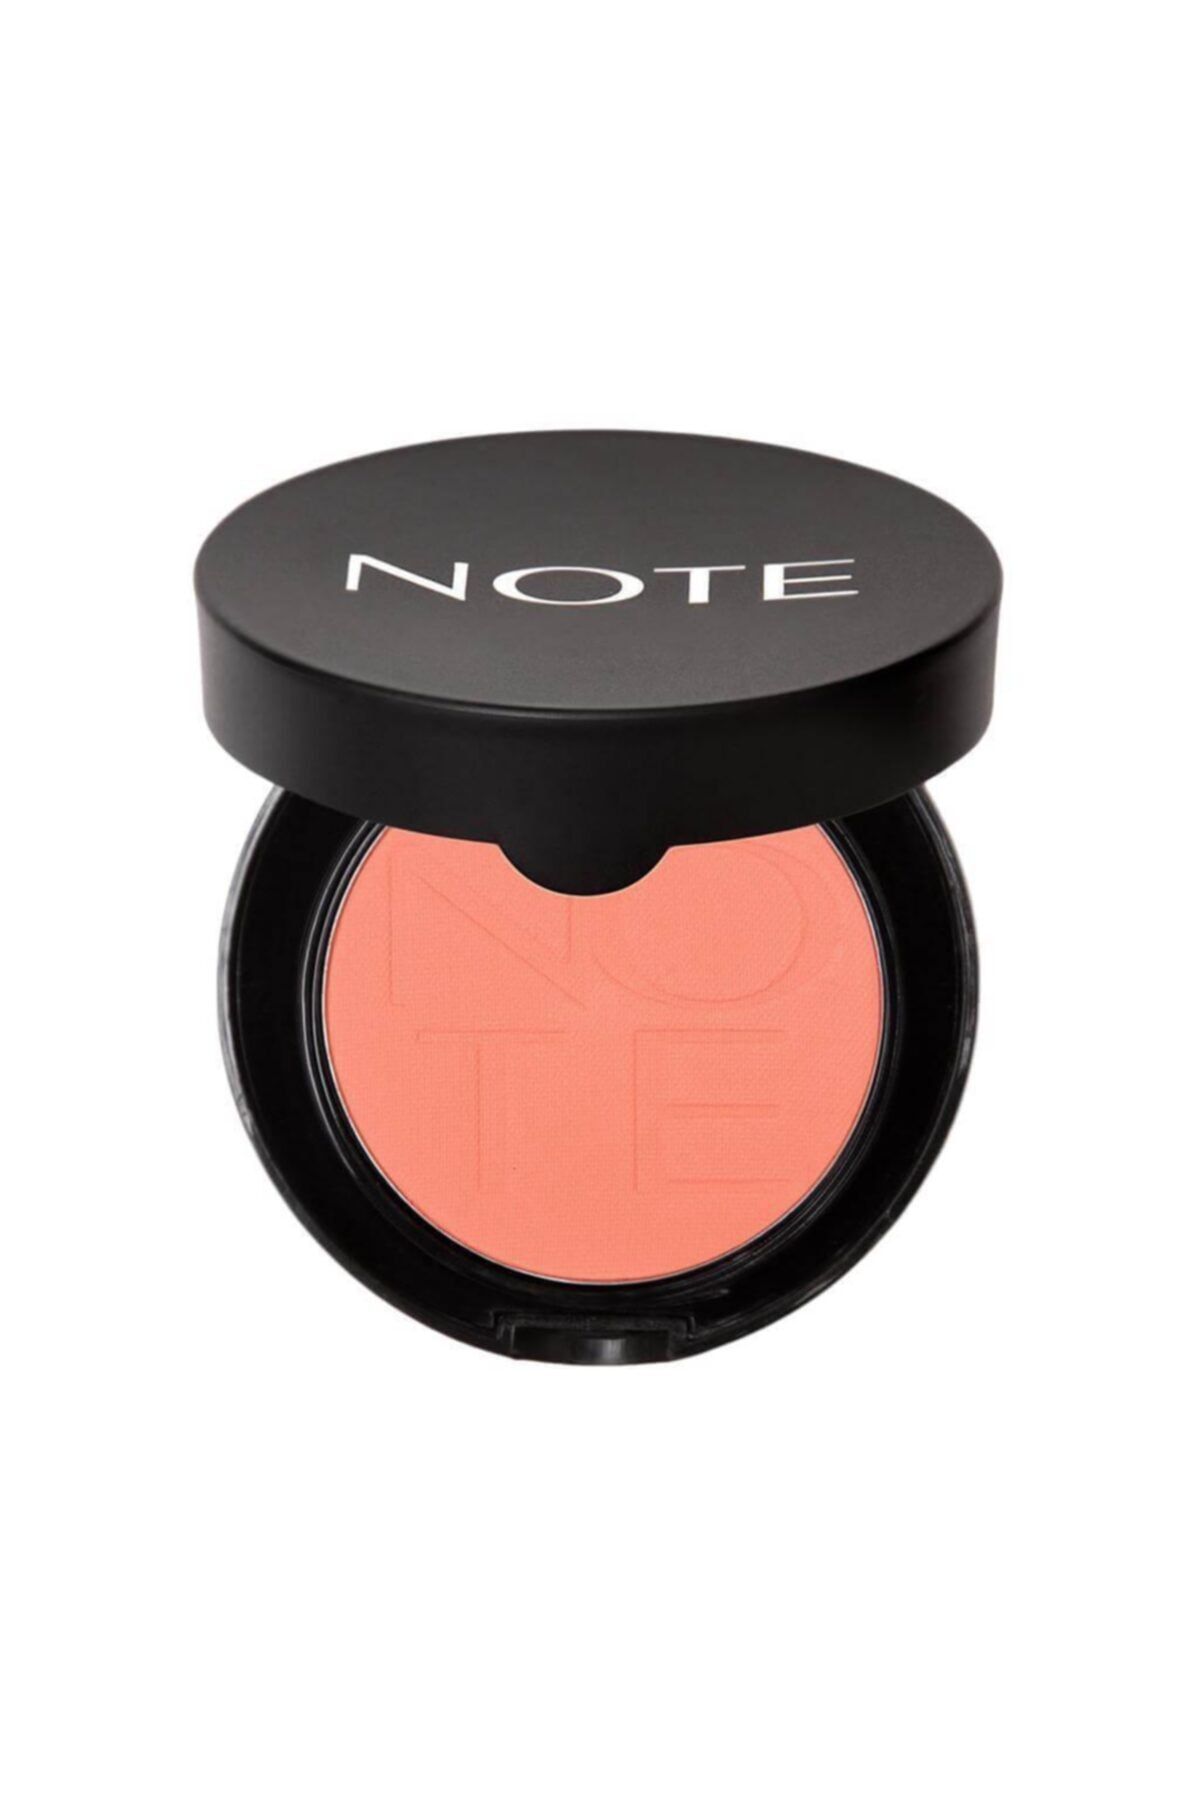 Note Cosmetics Luminous Silk Compact Blusher Allık Pink In Summer No:02 …..allık4